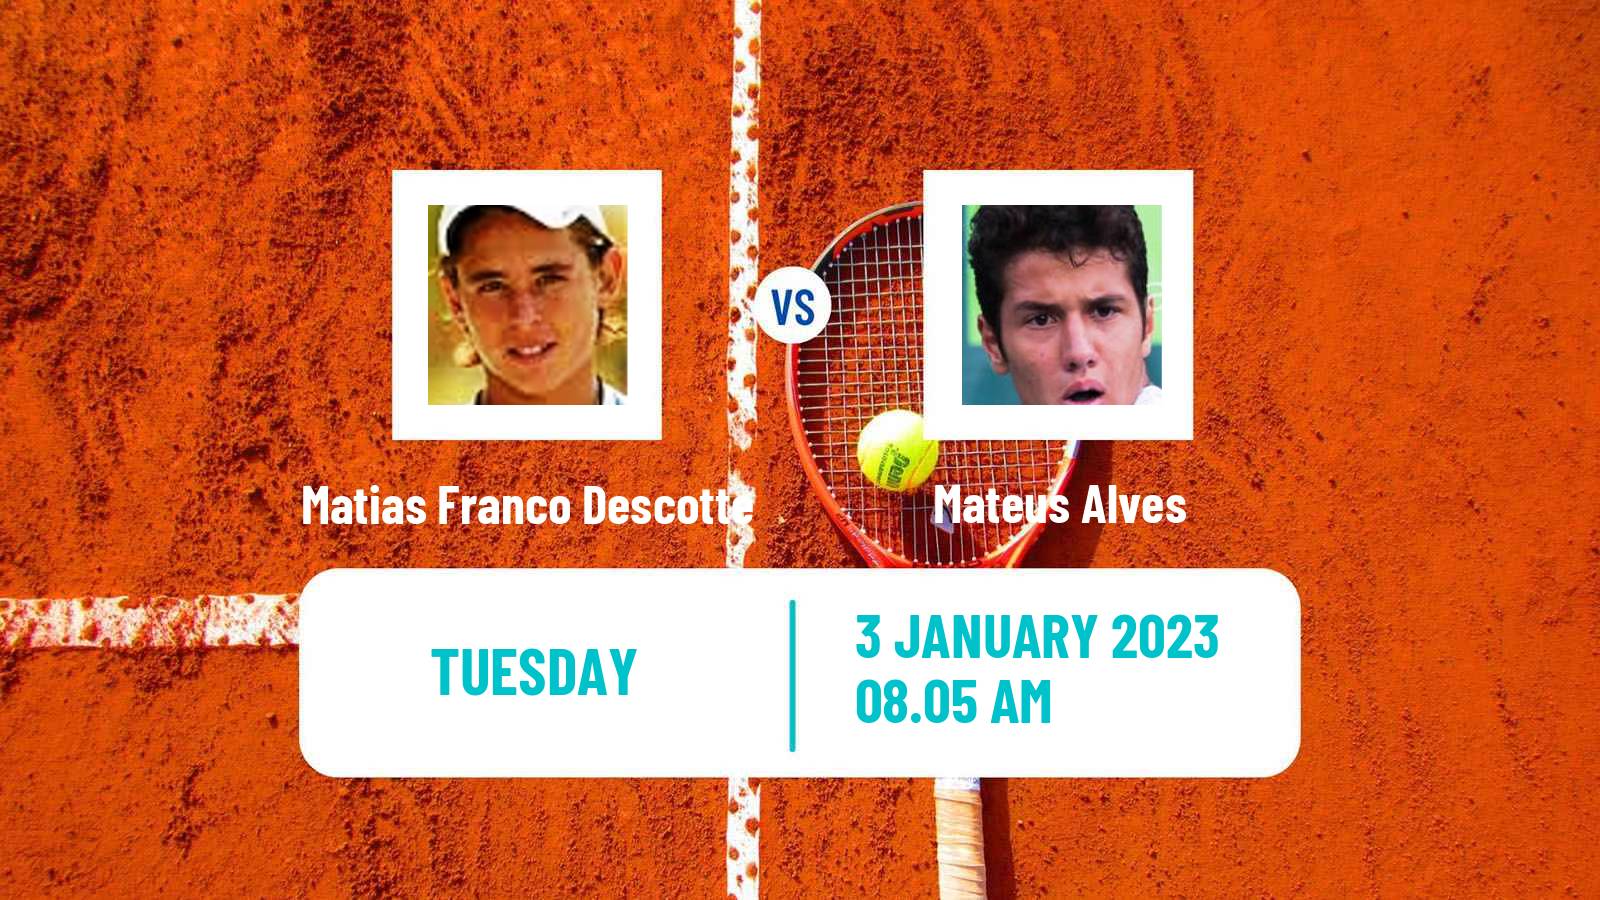 Tennis ATP Challenger Matias Franco Descotte - Mateus Alves